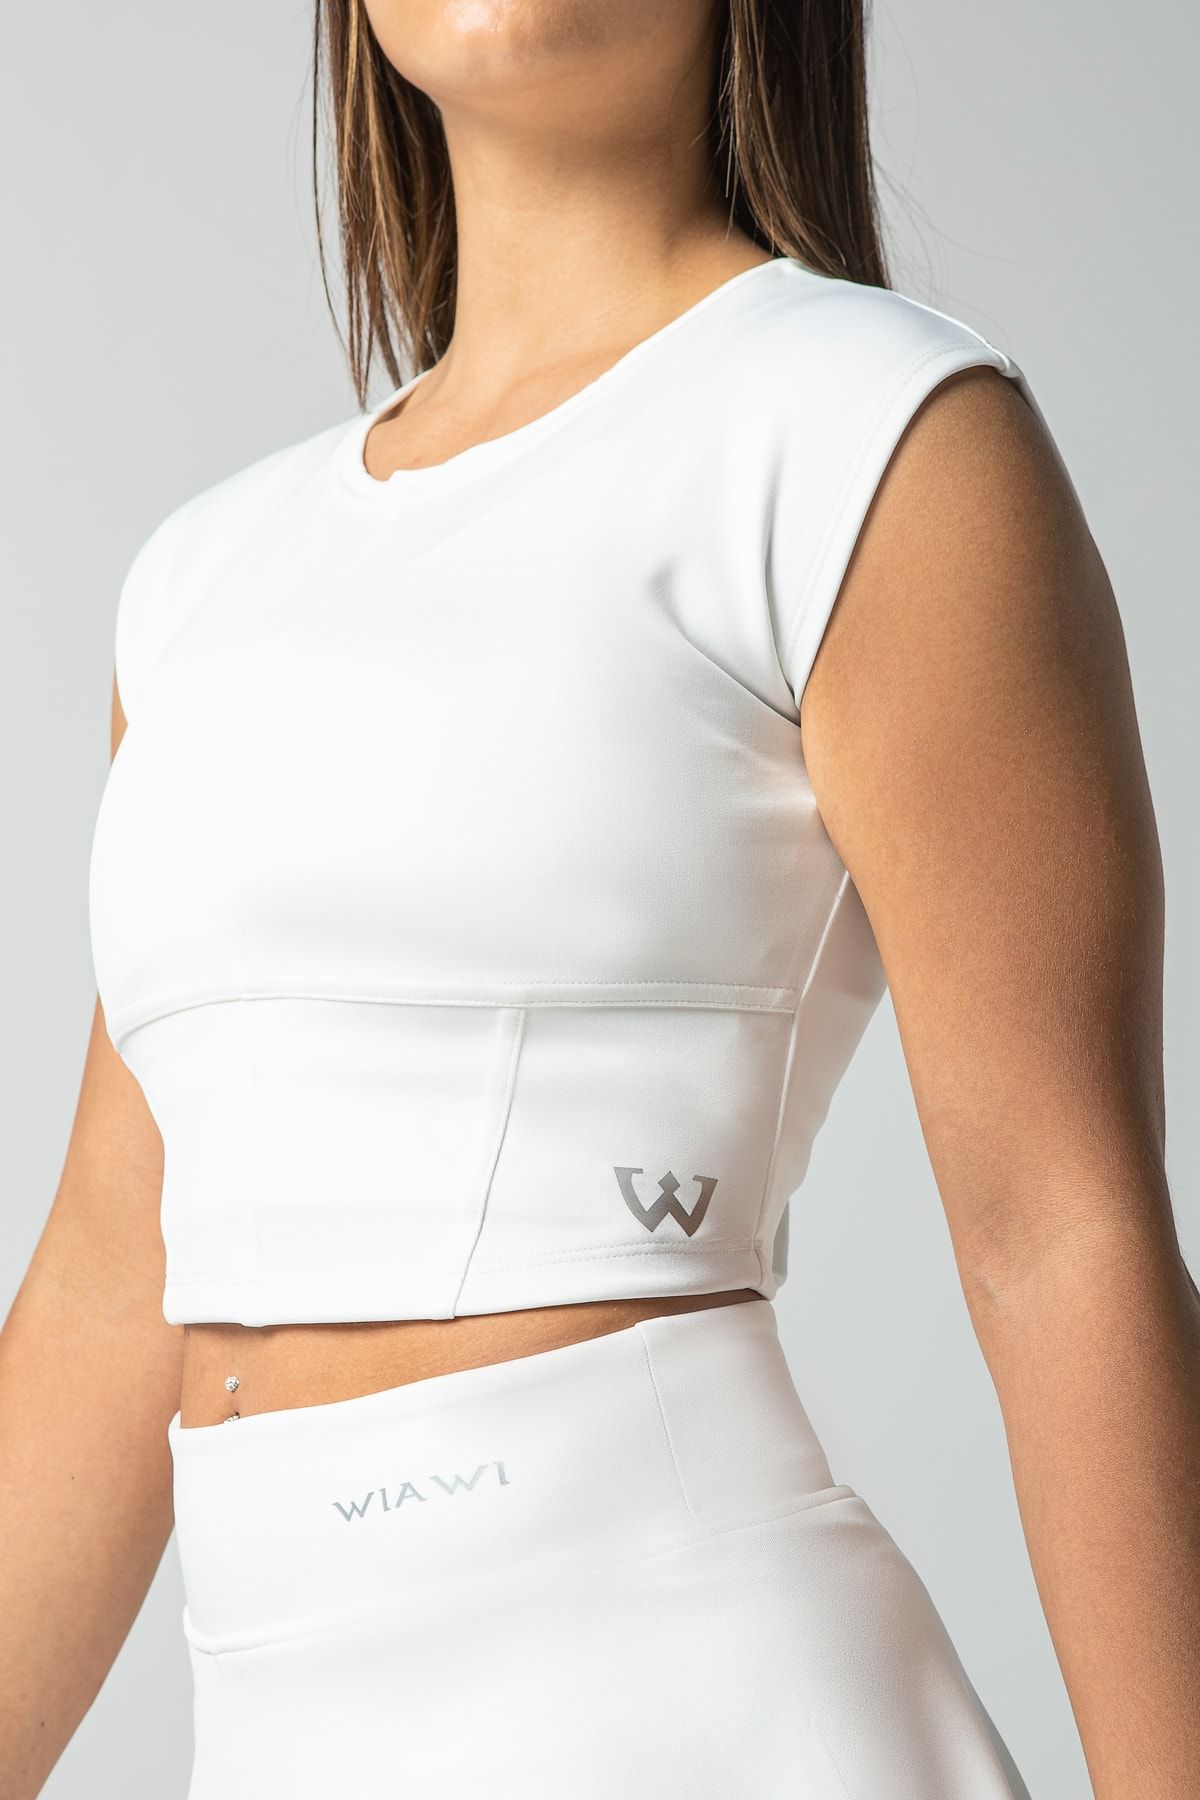 Wiawi Kadın Spor Fit Rahat Tişört Esnek Crop Top Unique Beyaz